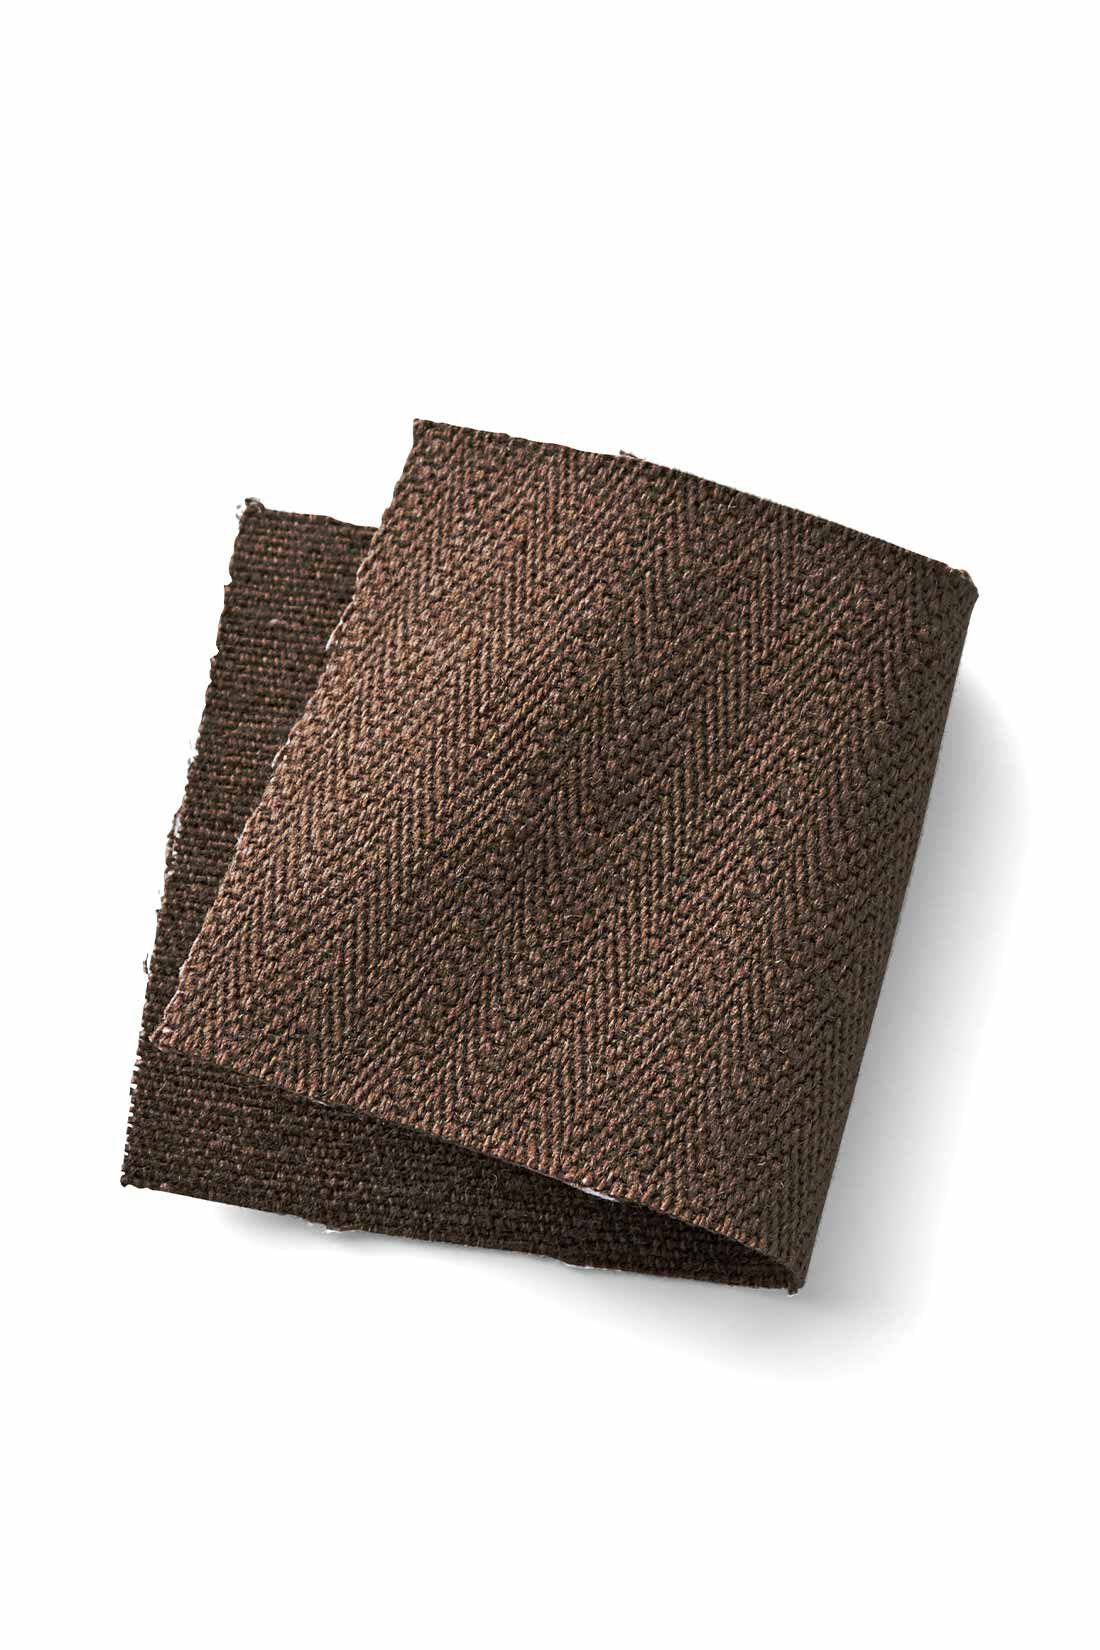 MEDE19F|MEDE19F　レースアップデザイン アノラックパーカー〈ブラウン〉|ざっくりと味のある綿100％のヘリンボーン織り素材。